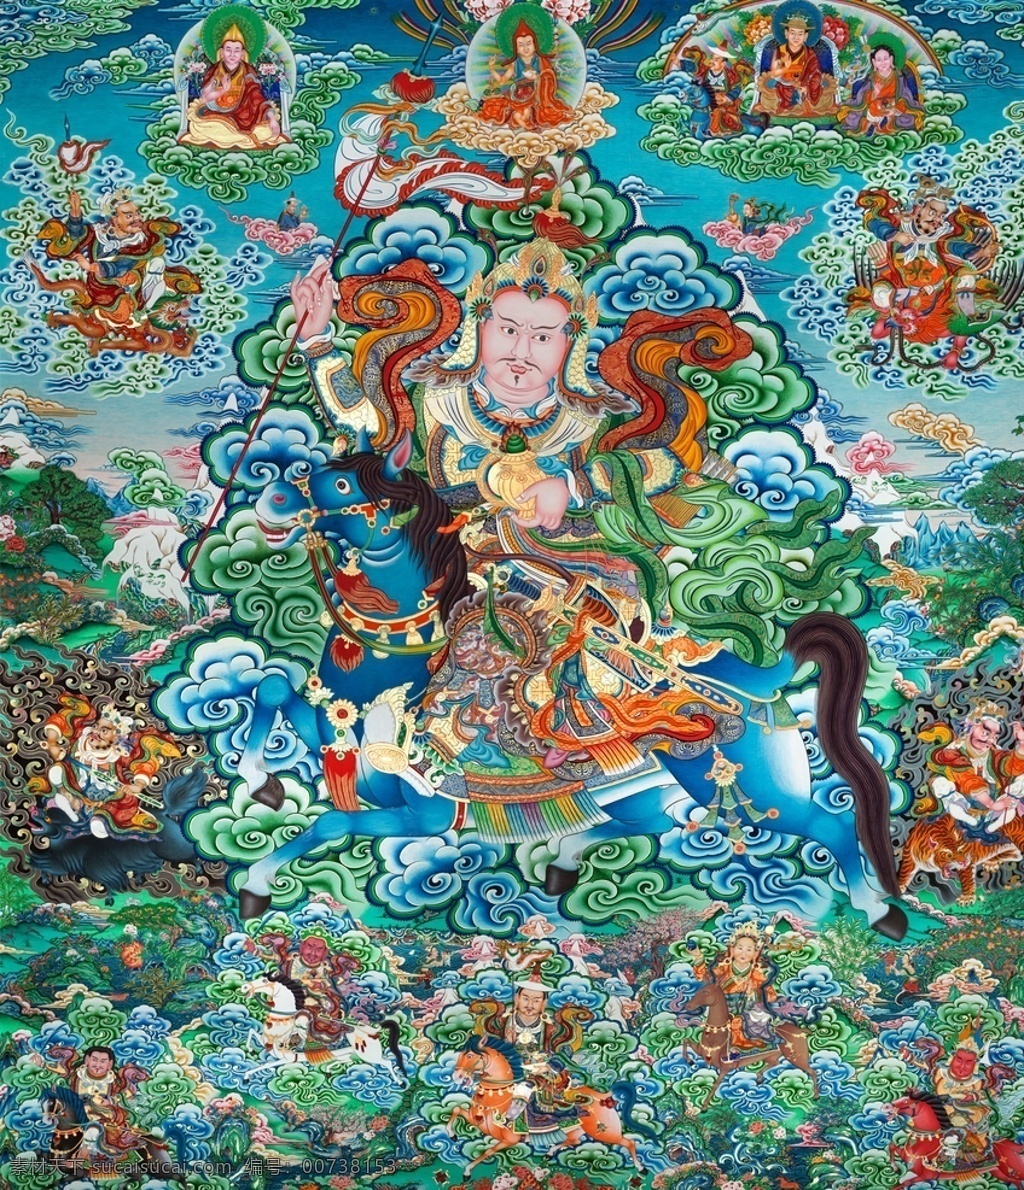 菩萨图片 唐卡 神像 莲花 宗教信仰 文化 观音 神话 宗教 唐卡广告 唐卡海报 藏族文化 藏经 文化艺术 绘画书法